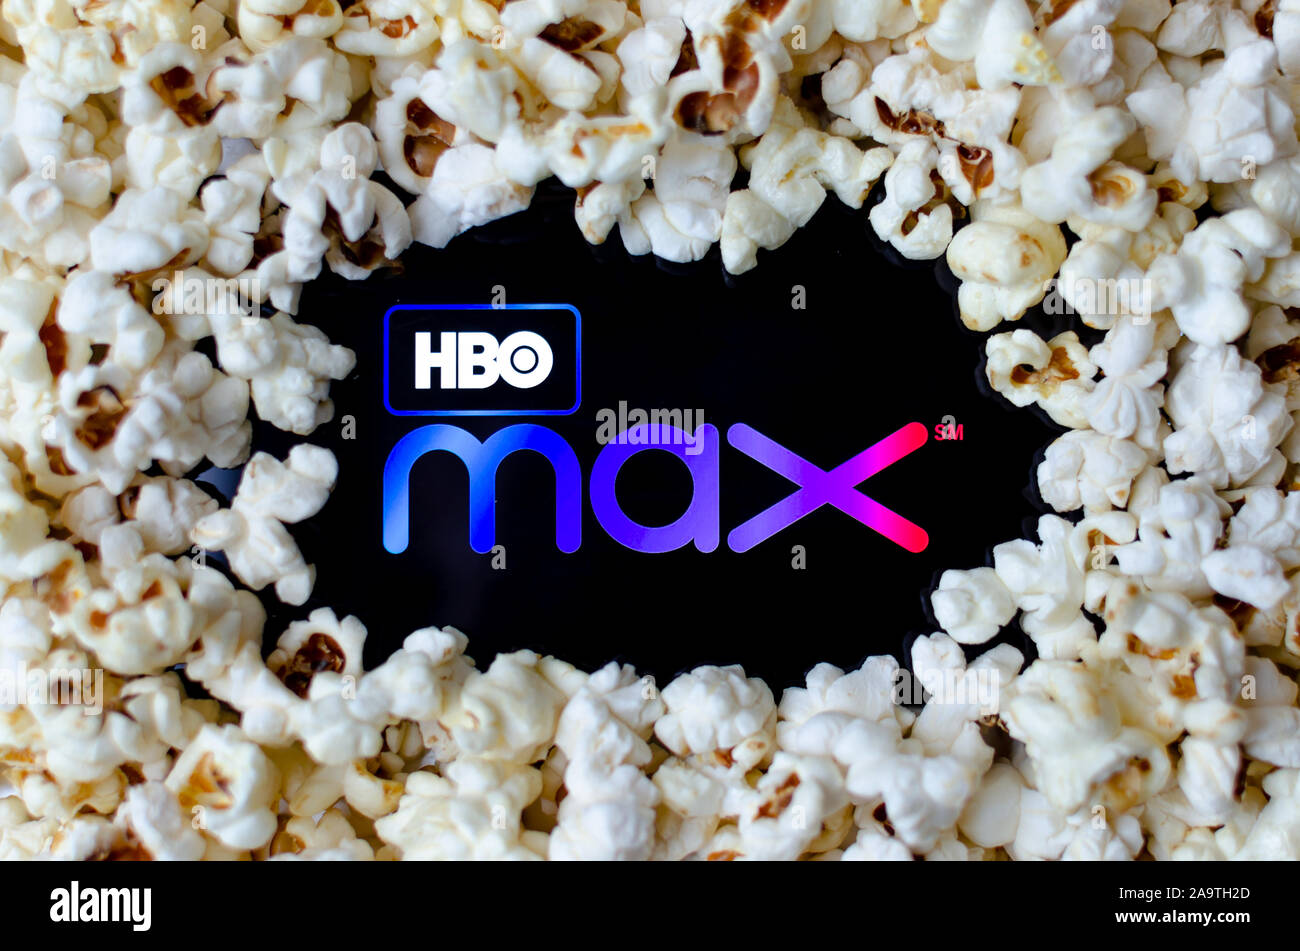 HBO max logo sur un smartphone couverts avec du maïs soufflé. Photo Concept pour un nouveau service de streaming vidéo. Banque D'Images